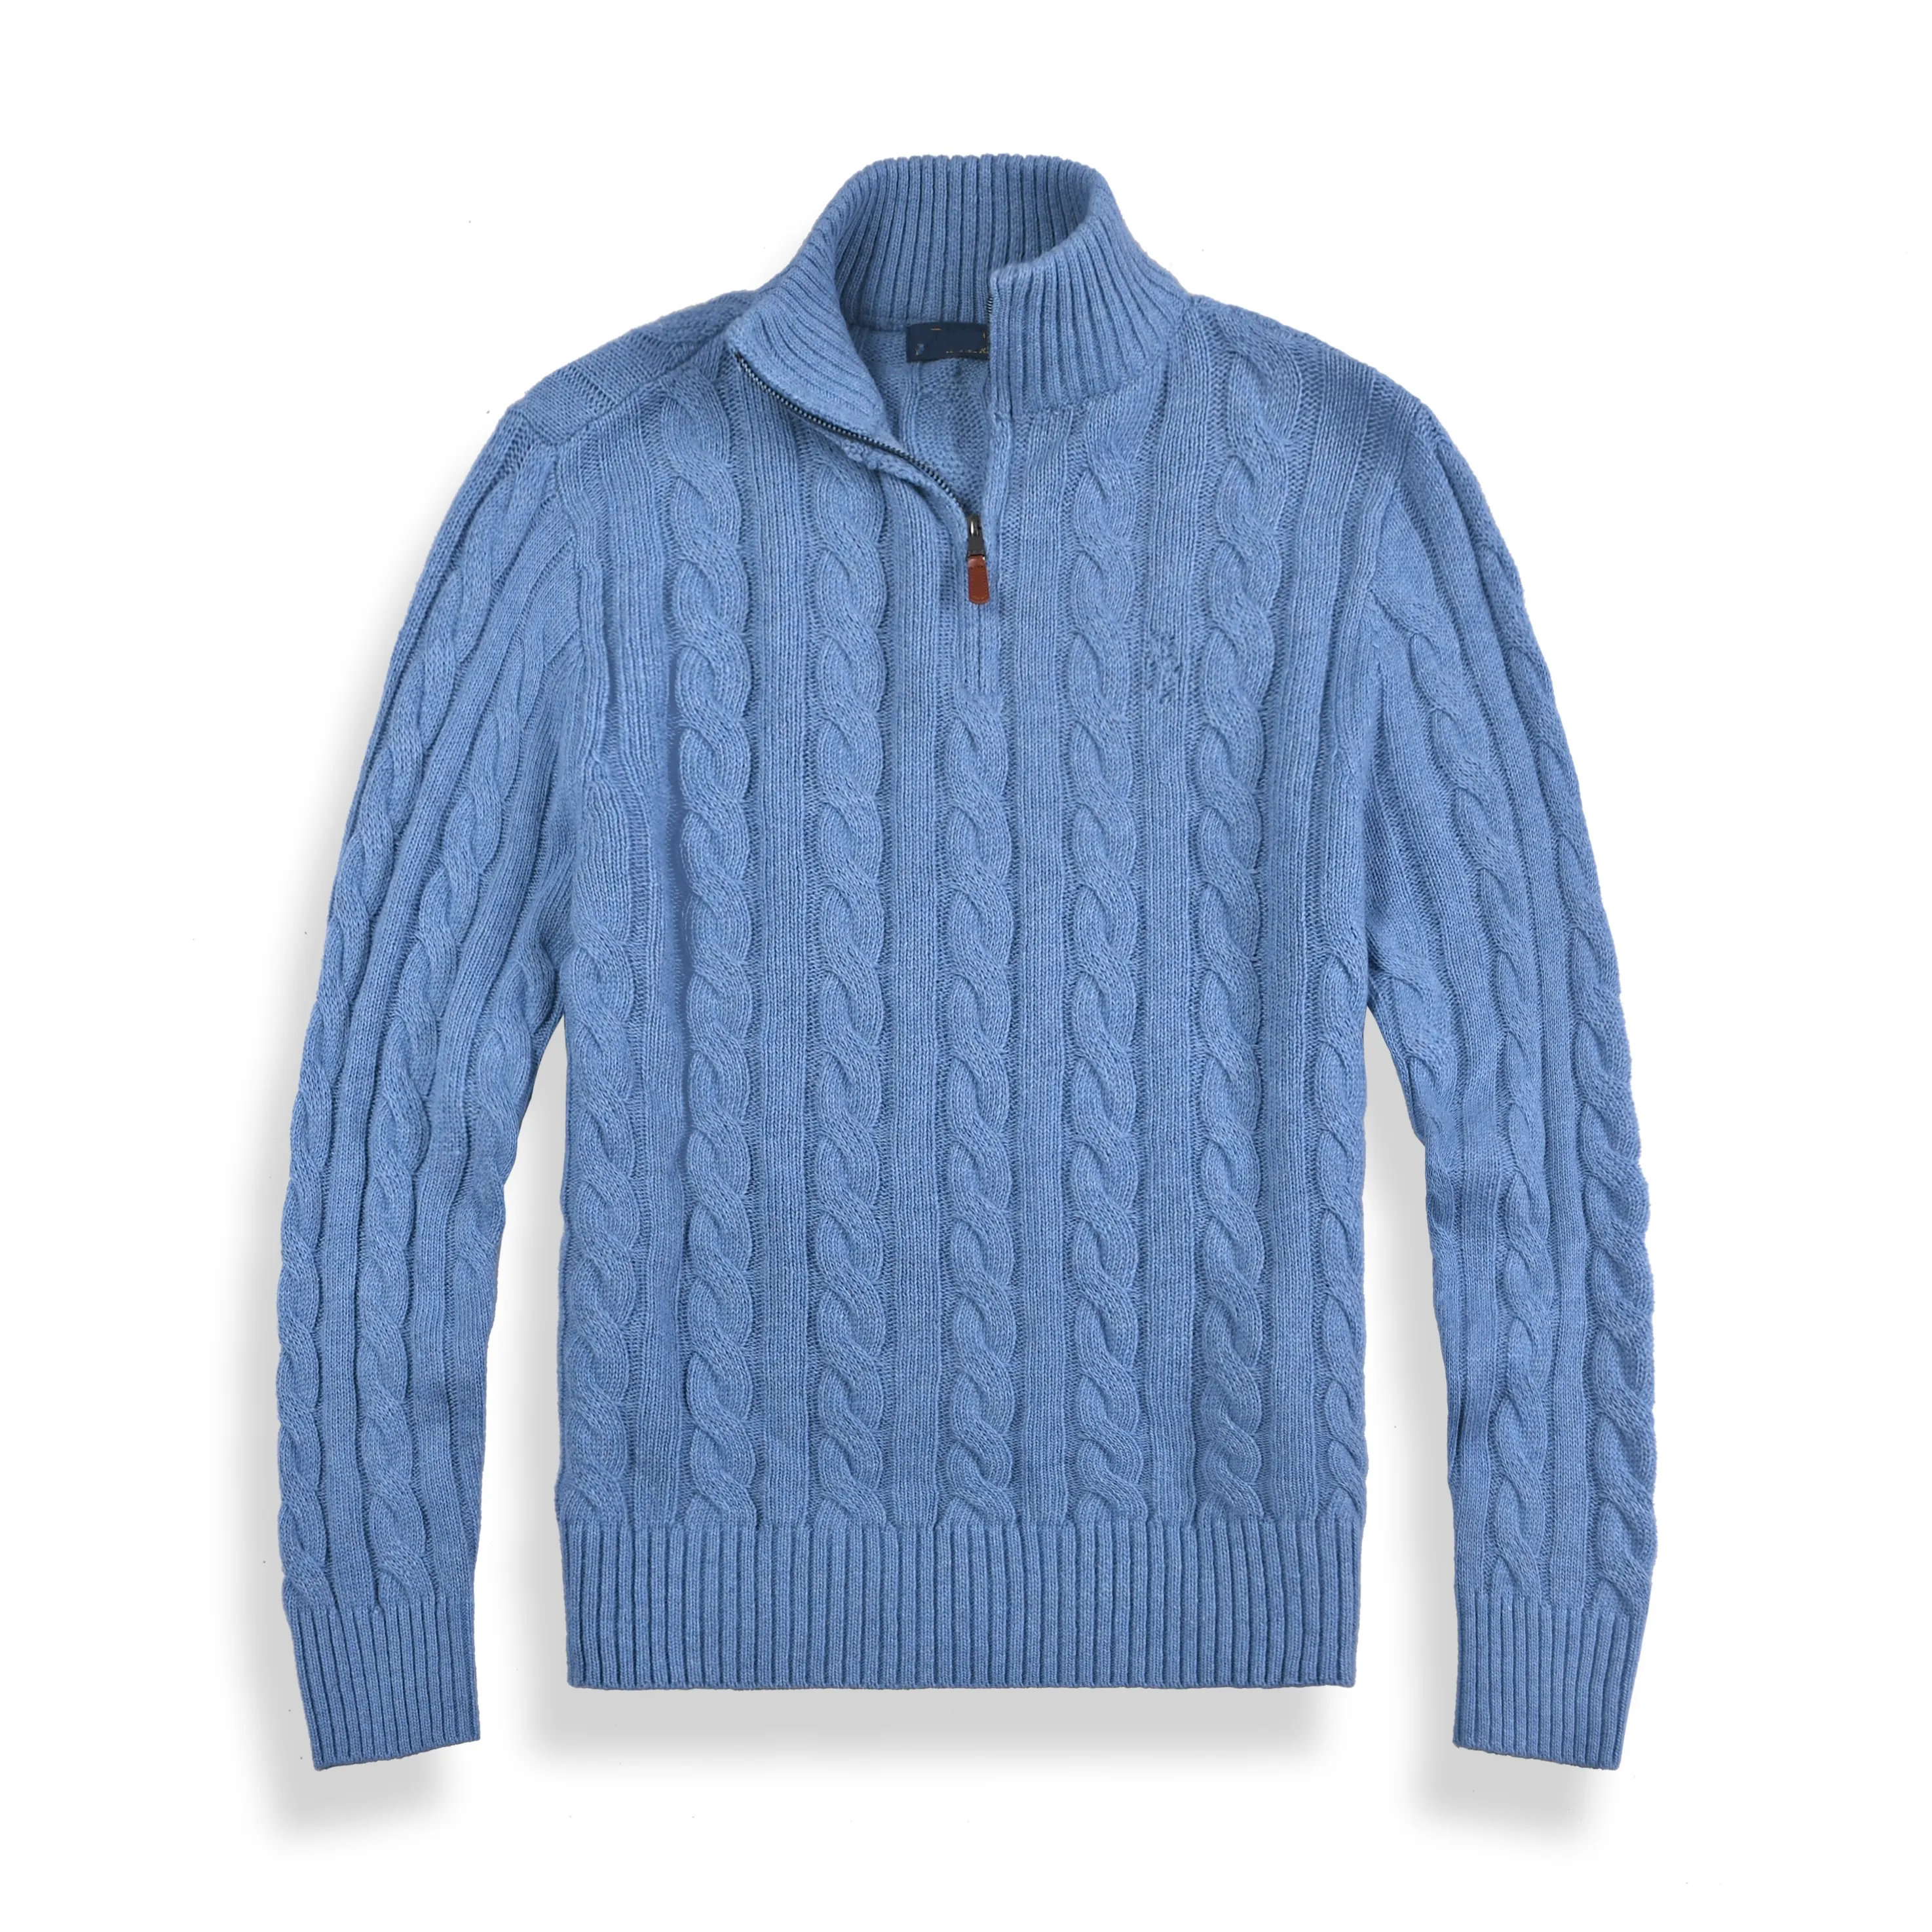 Grossistpaket mail 2102 bitar av nya polos skjortor i hösten och vintern Europe och America Men's Long Sleeved Casual Cotton Large Fashion Sweater Sweaters S-2XL